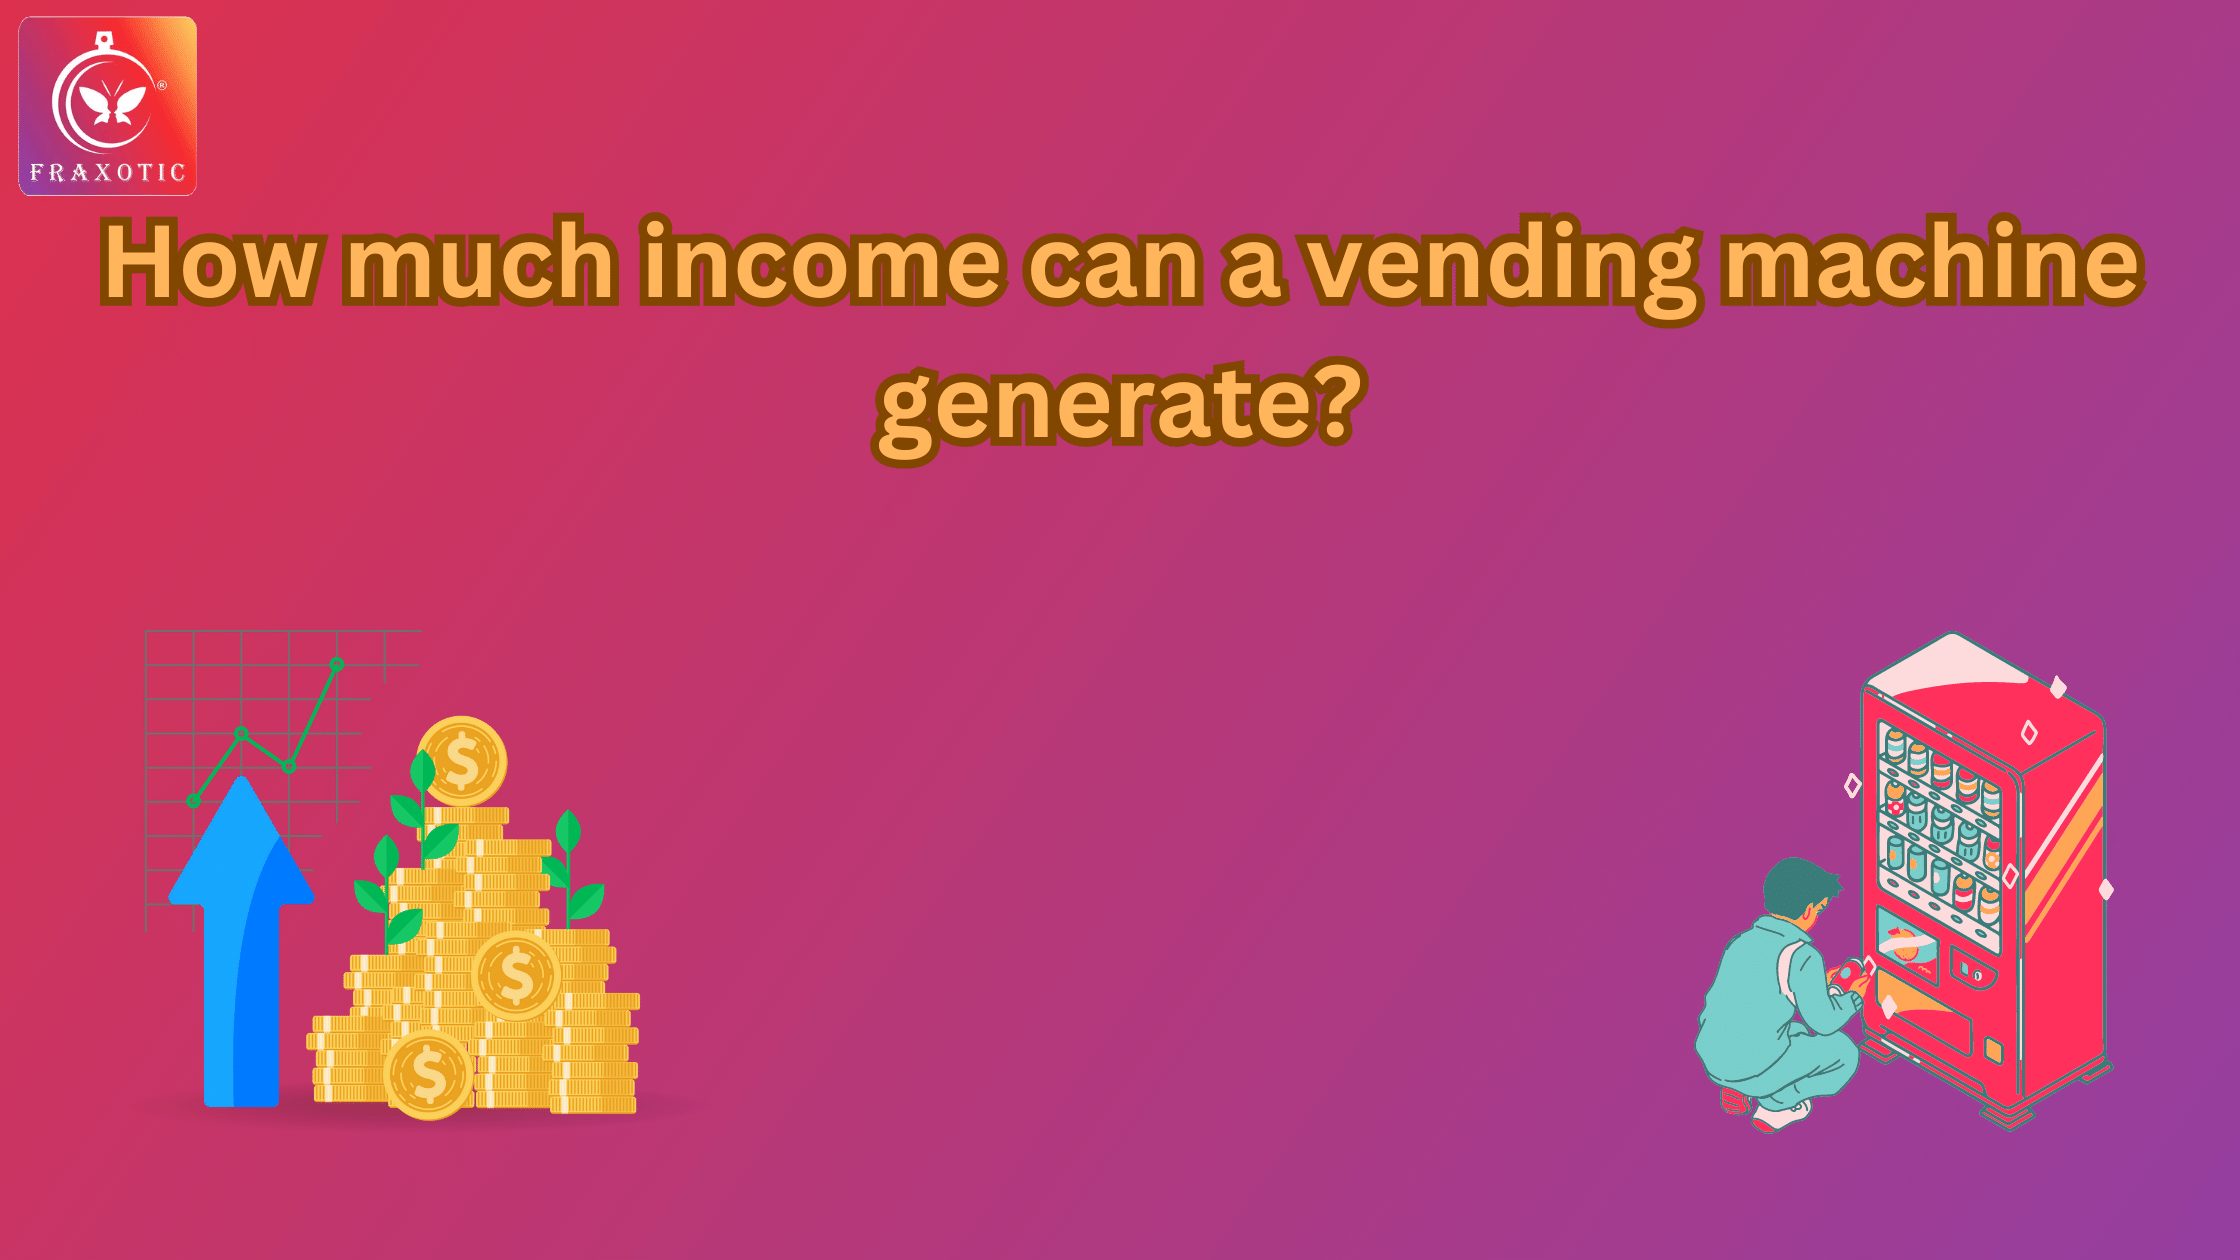 income can a vending machine generate?